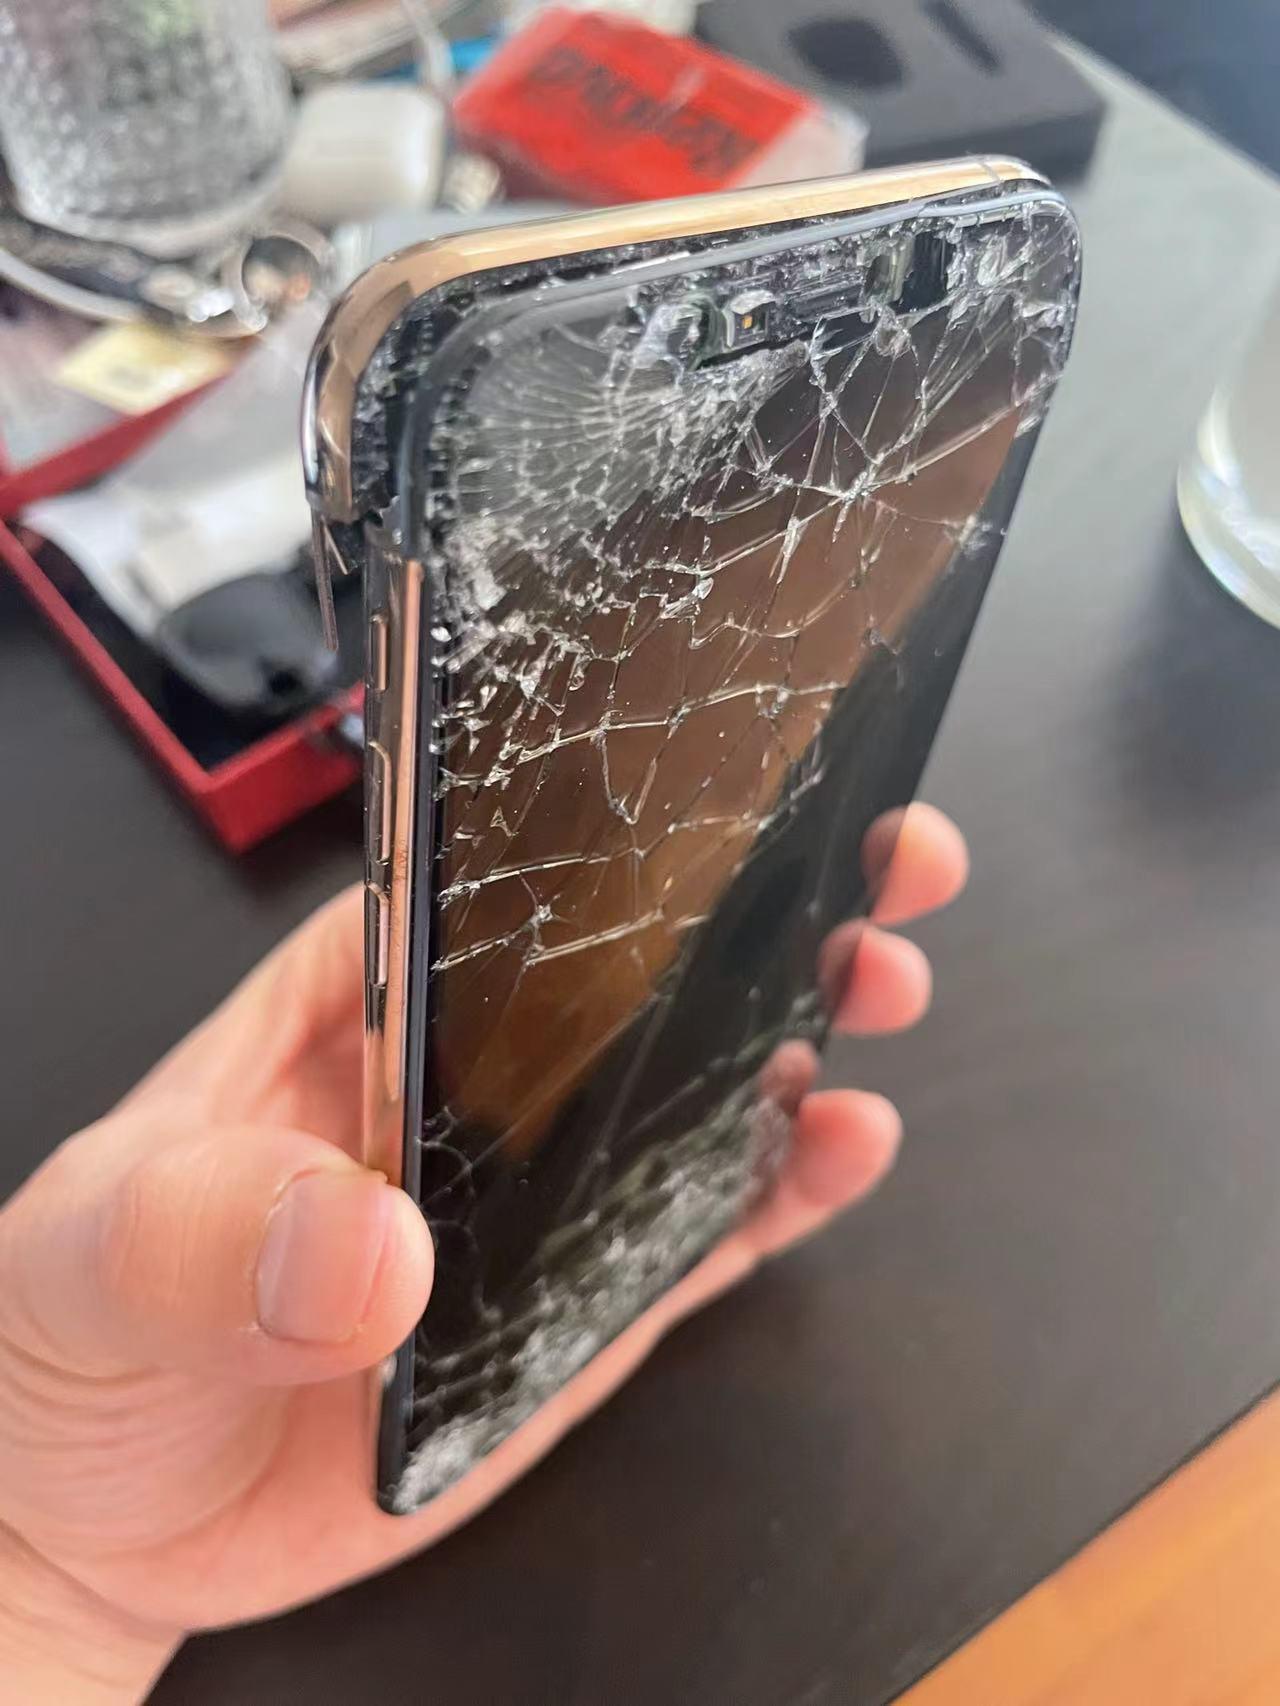 意外摔坏的手机能否保修？ - 知乎